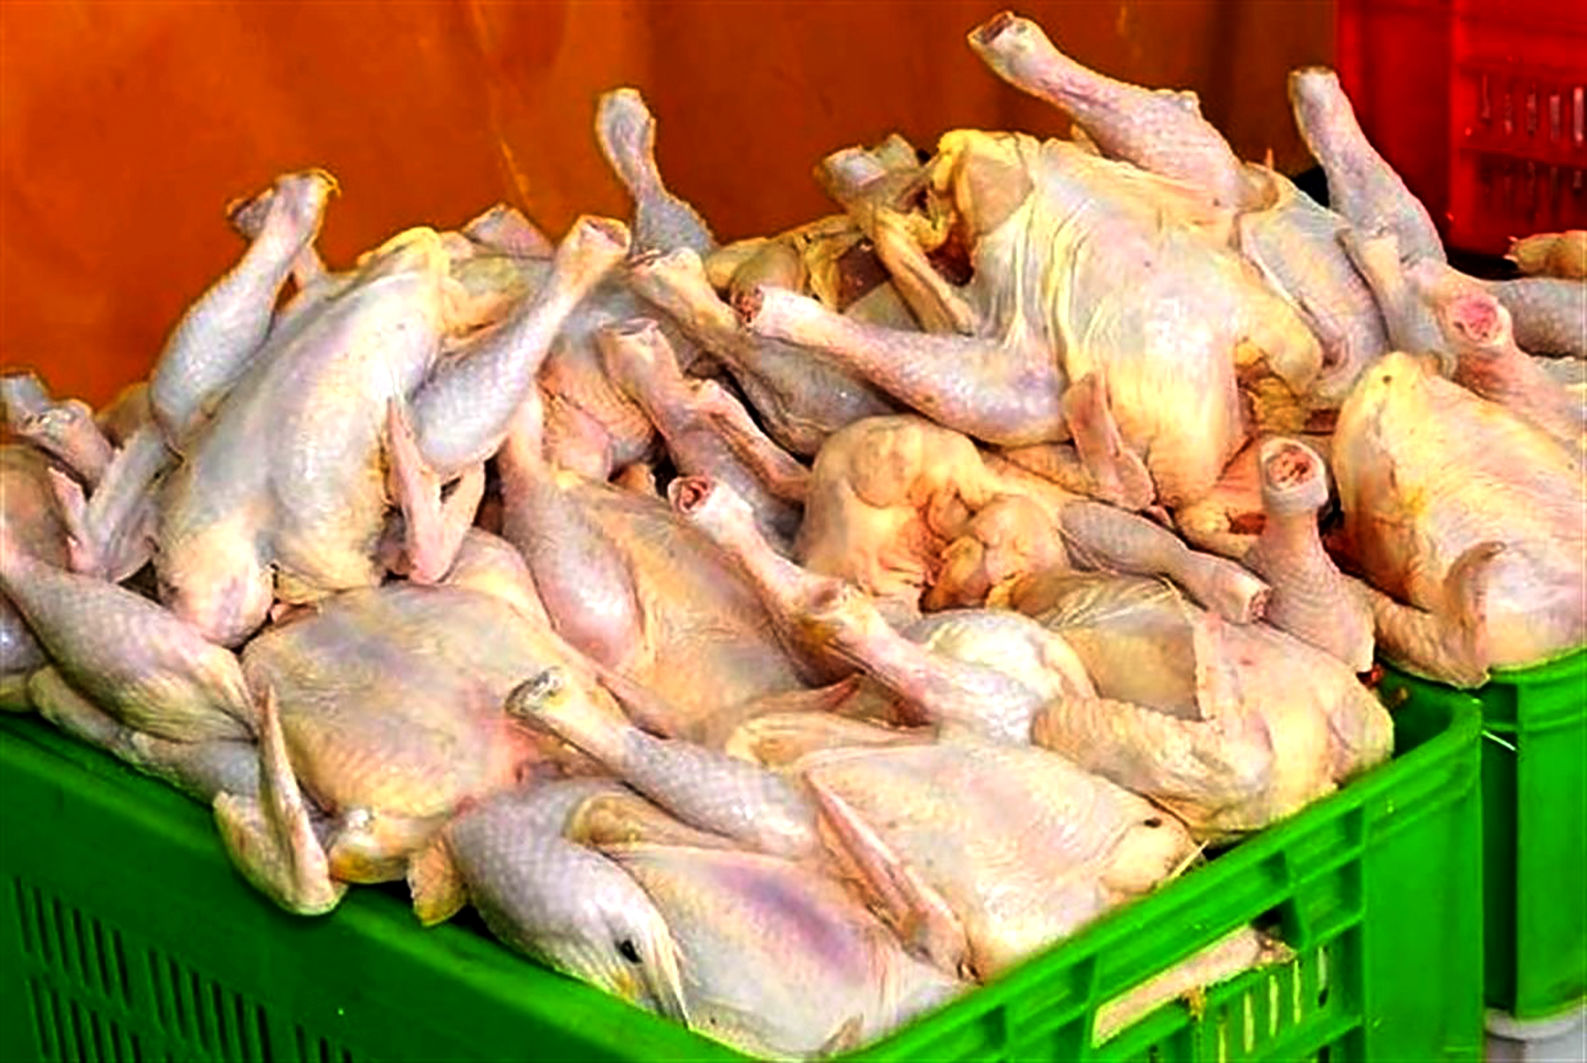 توزیع روزانه ۳۰۰ تن مرغ گرم کیلویی ۳۱ هزار تومان در خراسان رضوی